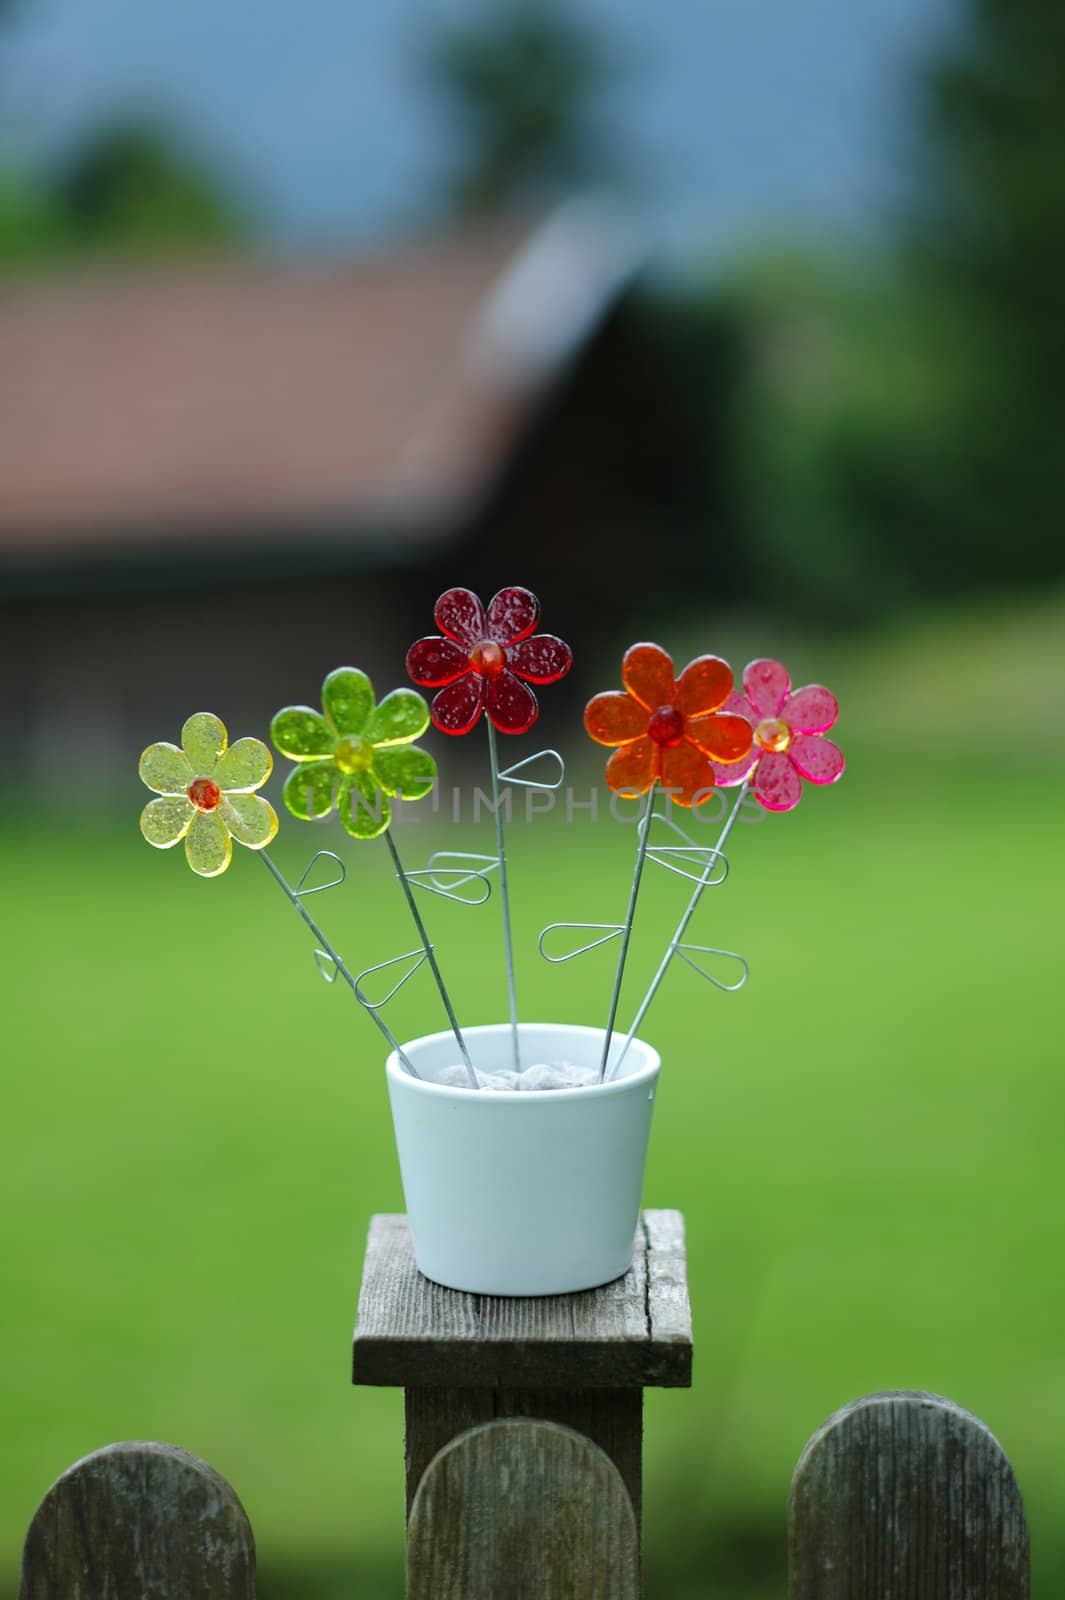 plastic flowers by mjenewein